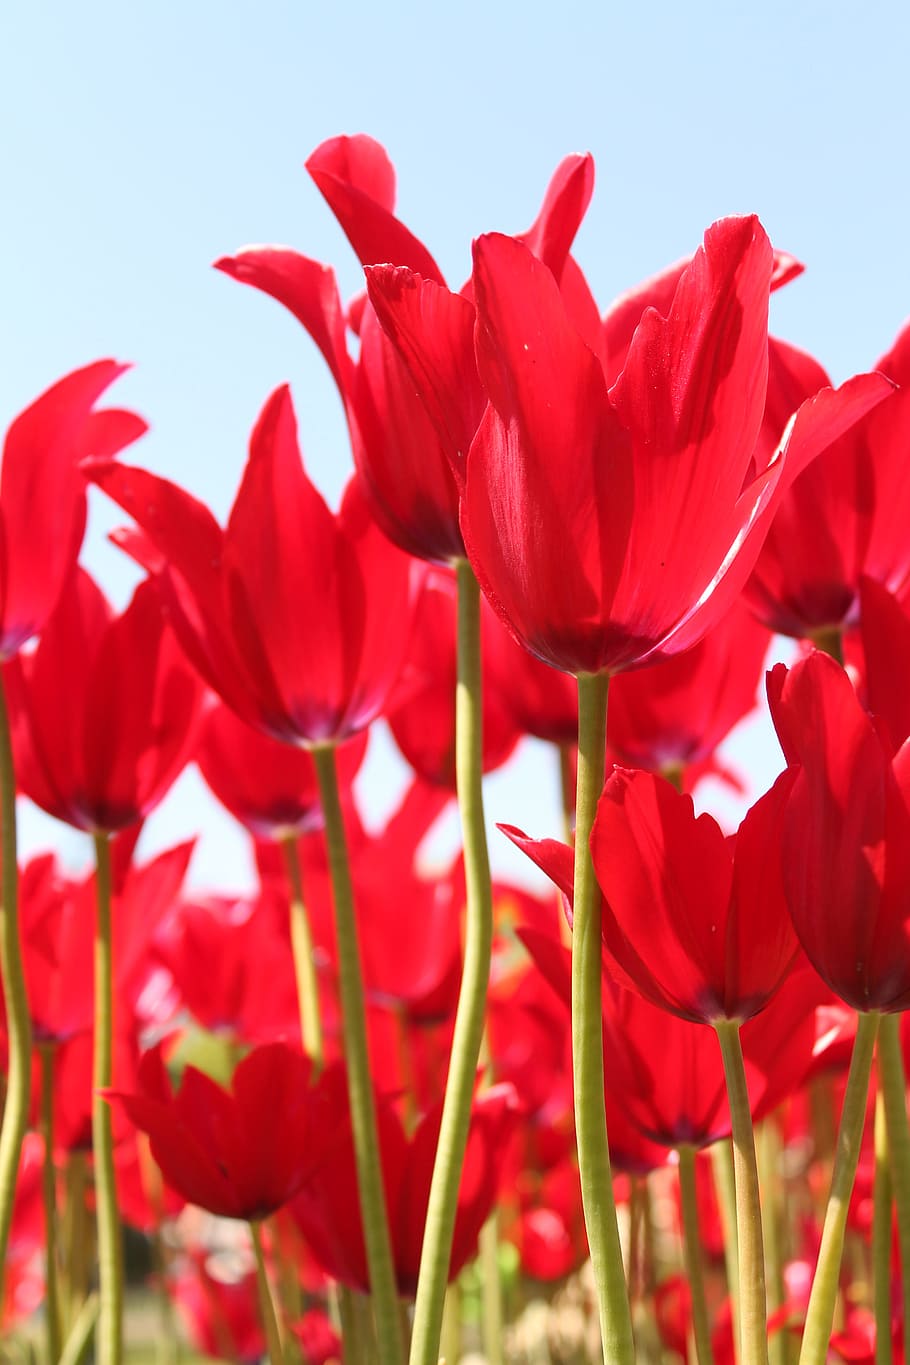 vermelho, festival da flor tulipa, tulipa, festival, flor, fazenda, flores, Planta de florescência, Beleza da natureza, vulnerabilidade